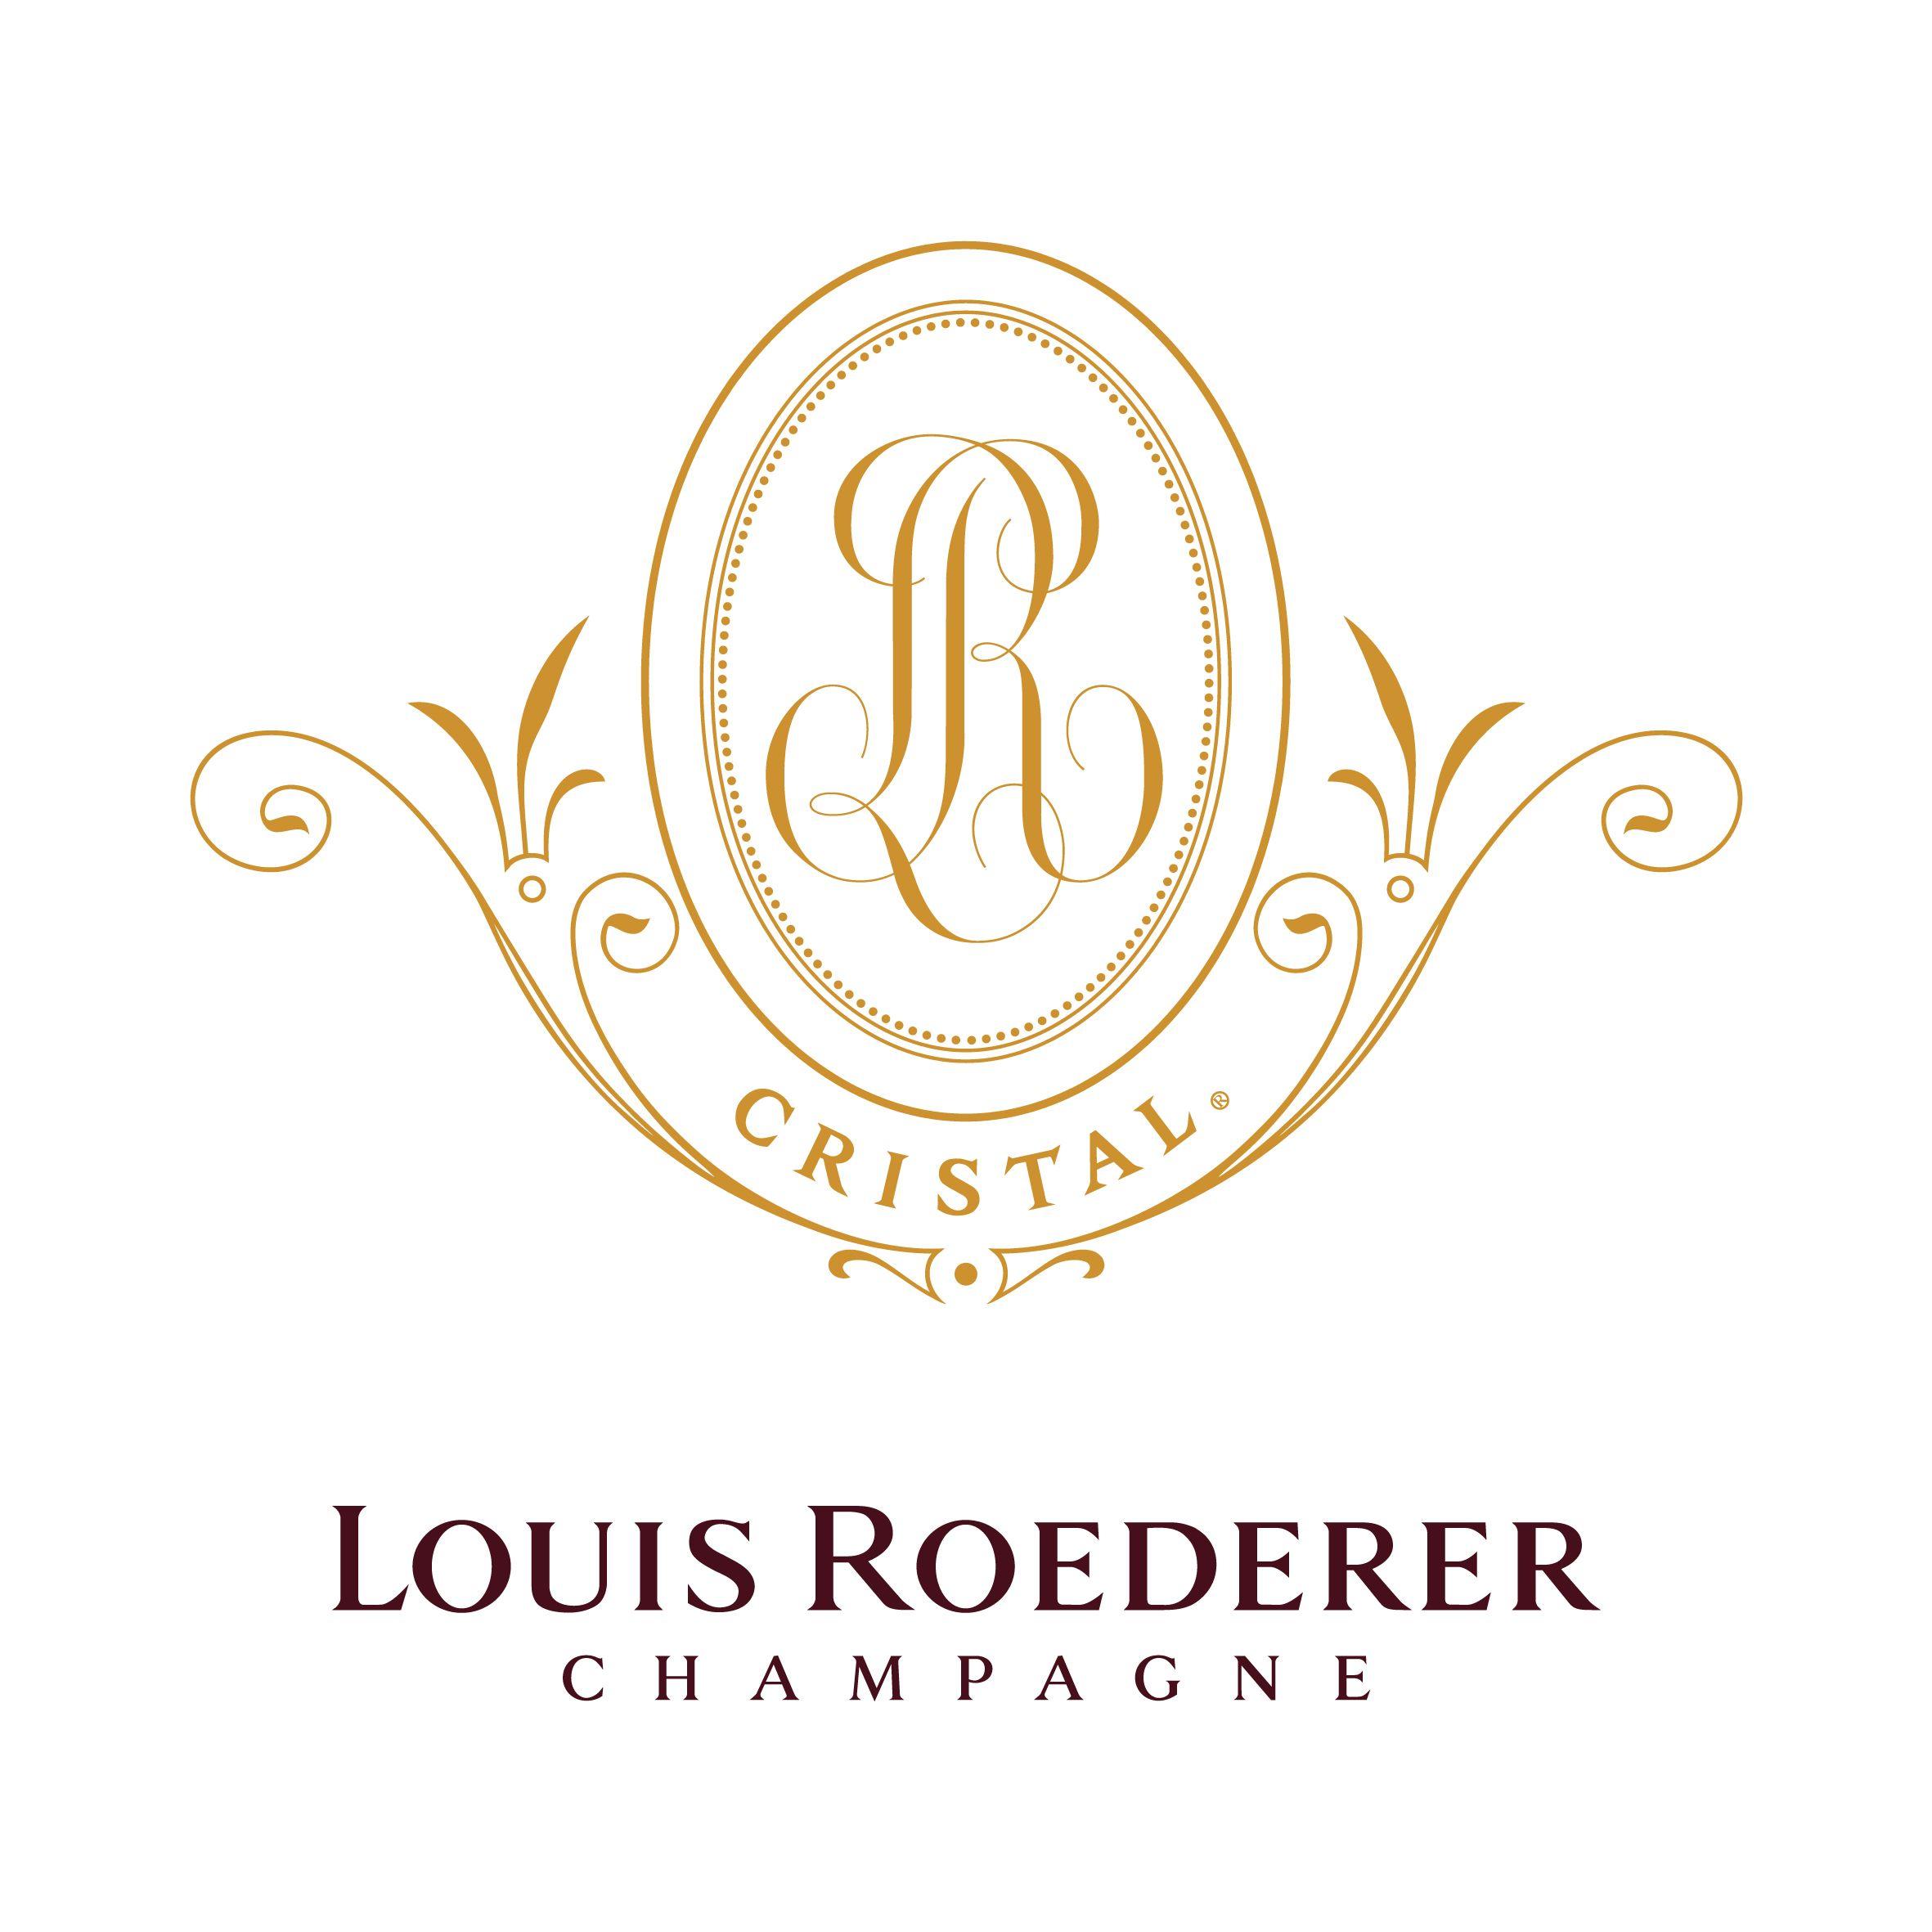 Champagne Logo - Champagne Logos